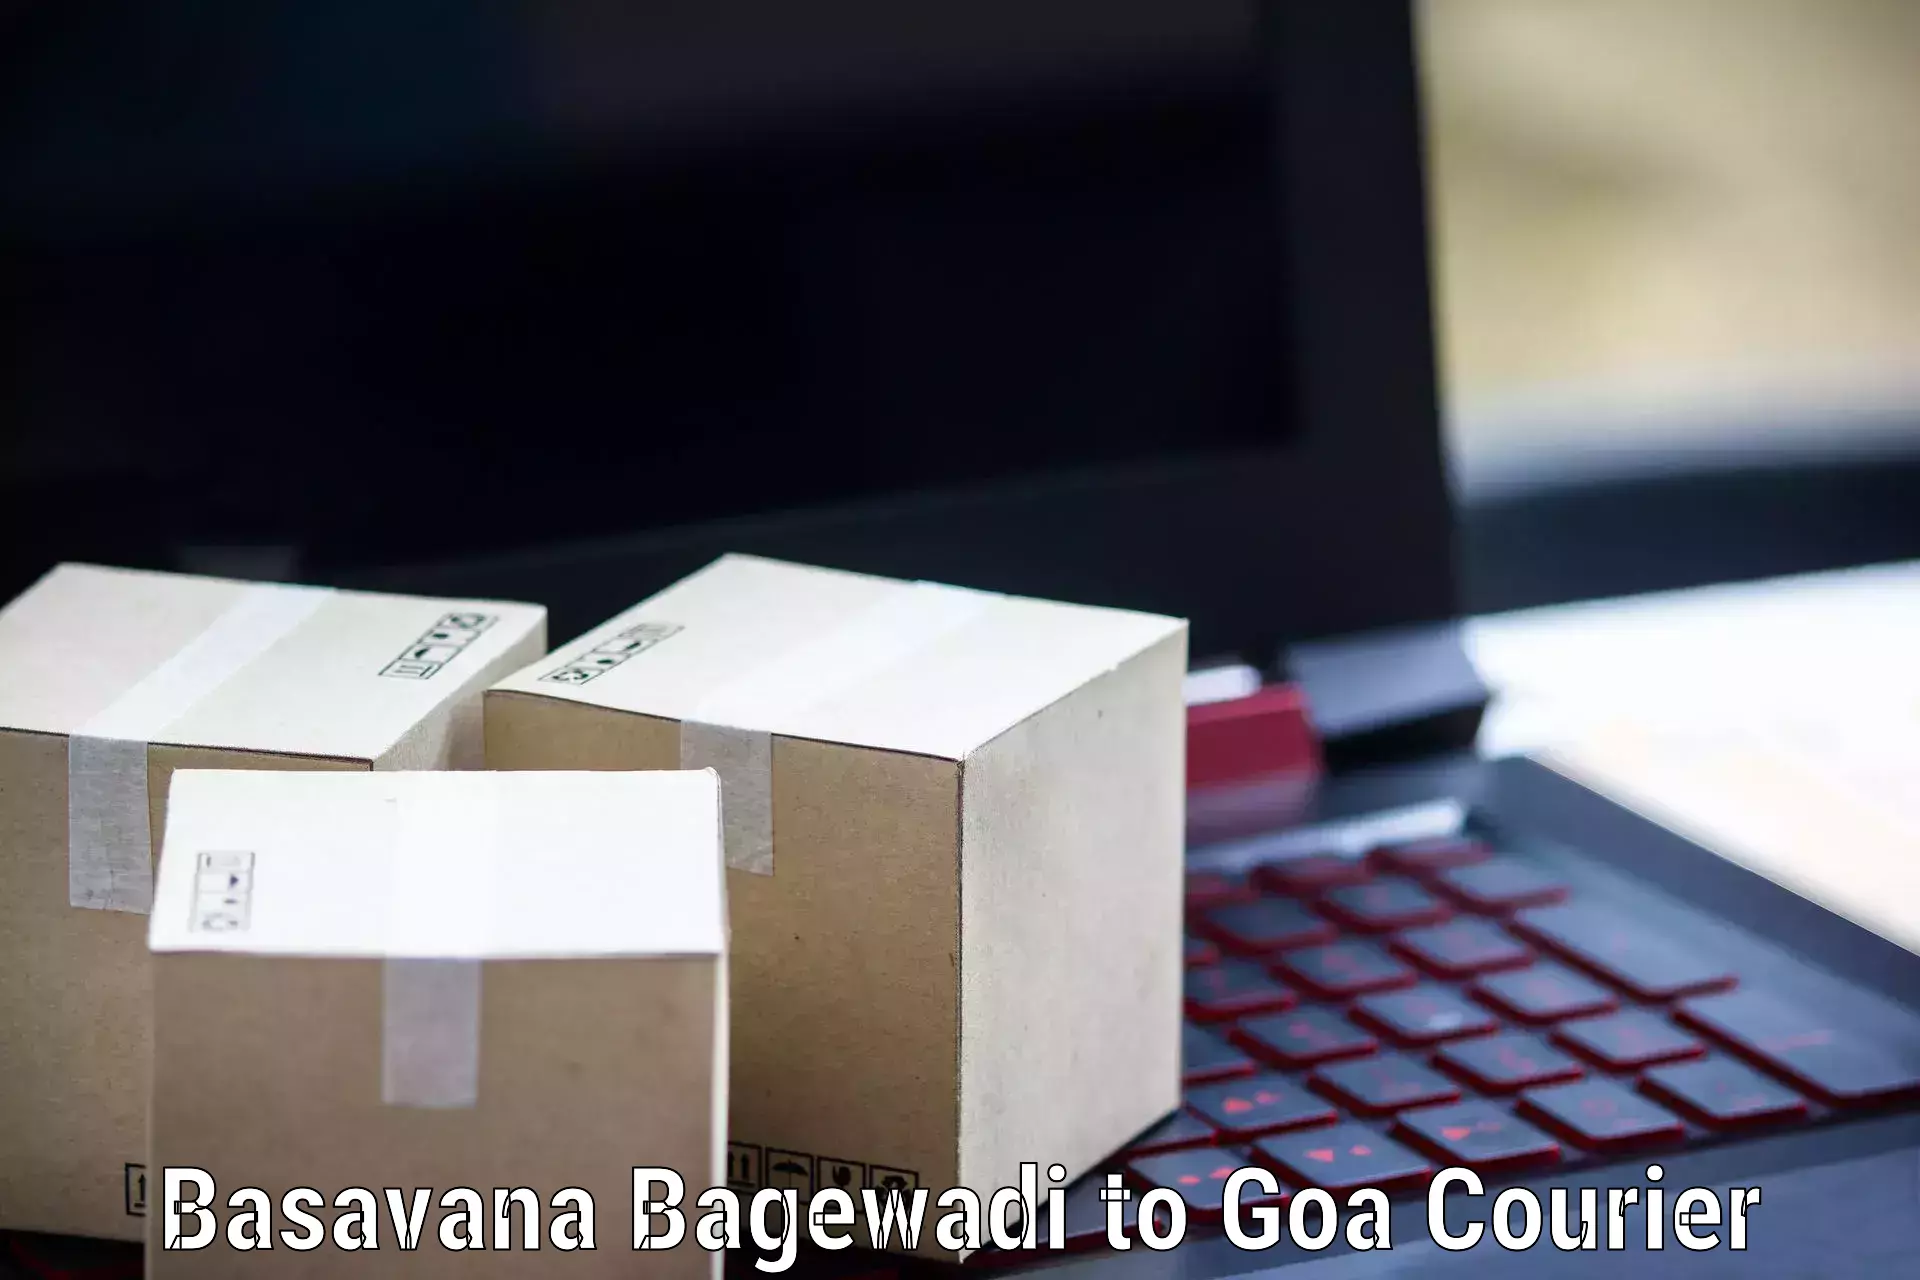 Expedited shipping methods Basavana Bagewadi to NIT Goa